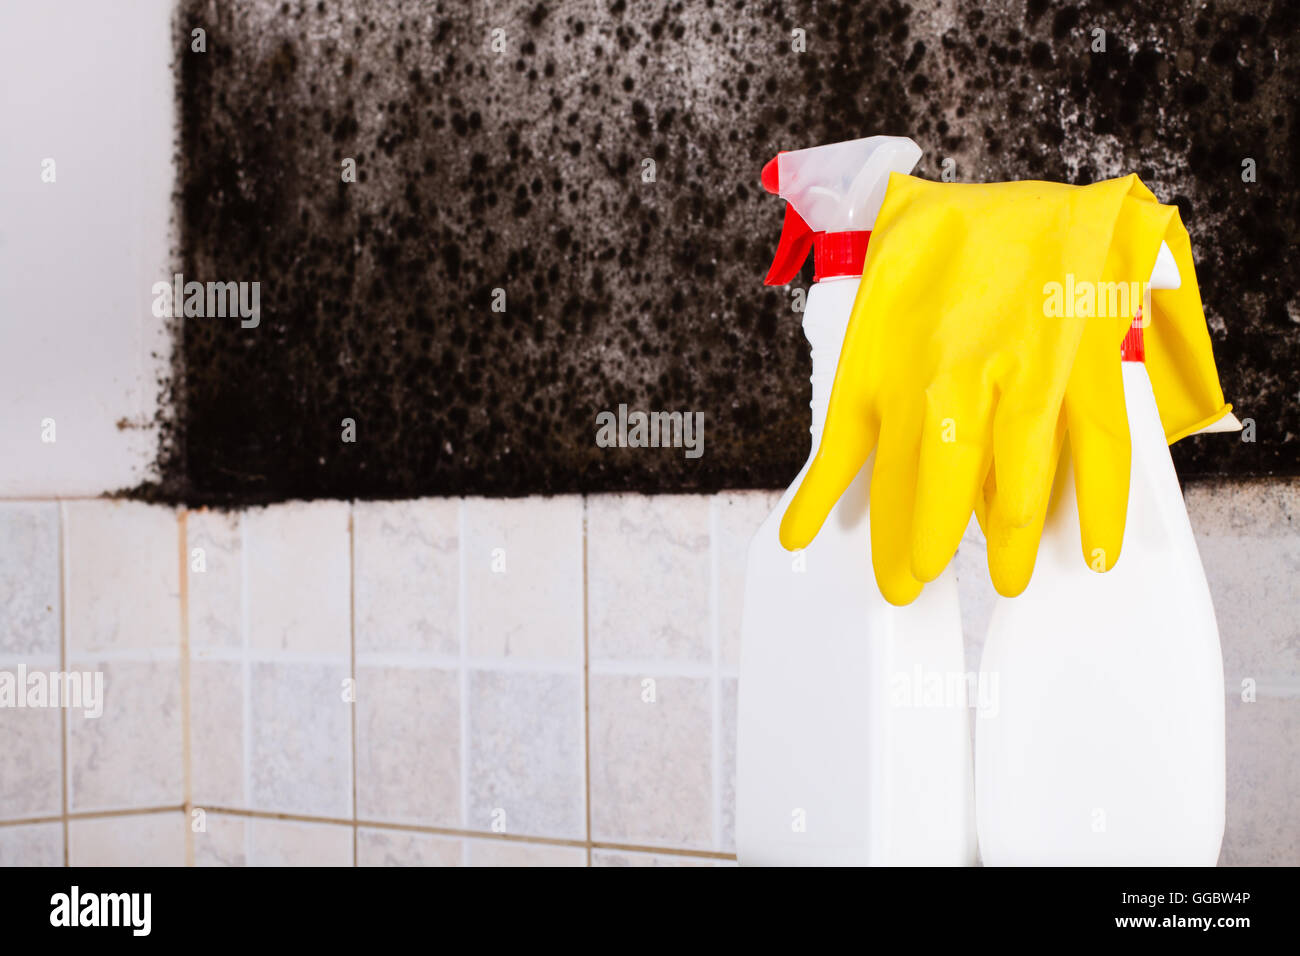 Vorbereitung zur Entfernung von Schimmel und gelb Handschuhe gegen den Schimmel an der Wand. Stockfoto